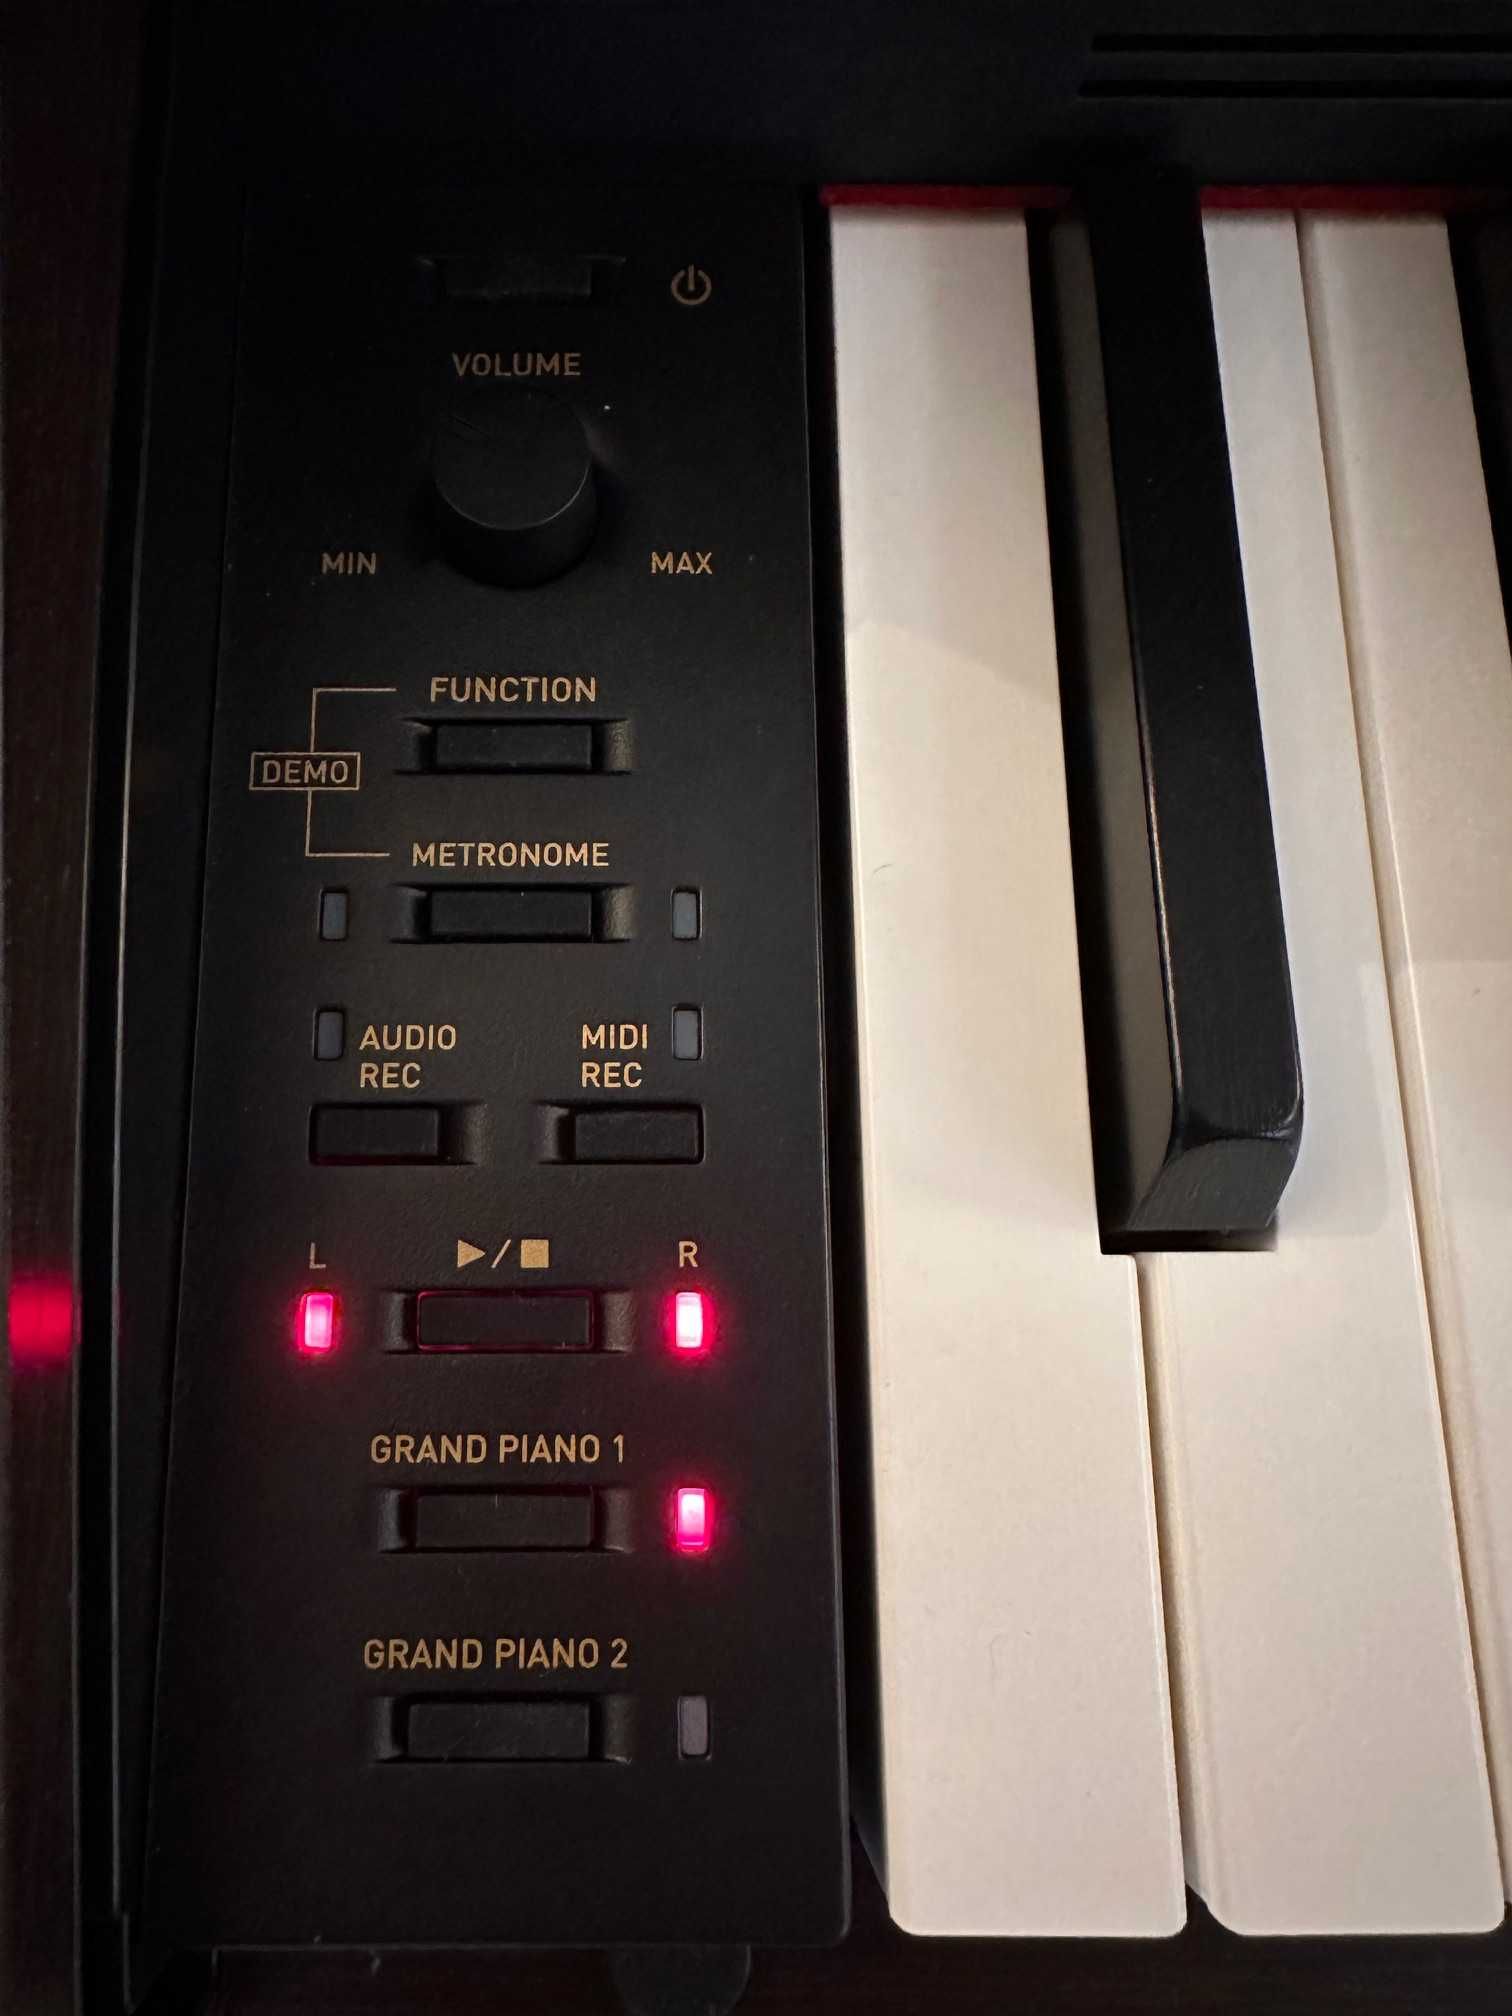 Pianino cyfrowe Casio AP-470 BN na gwarancji